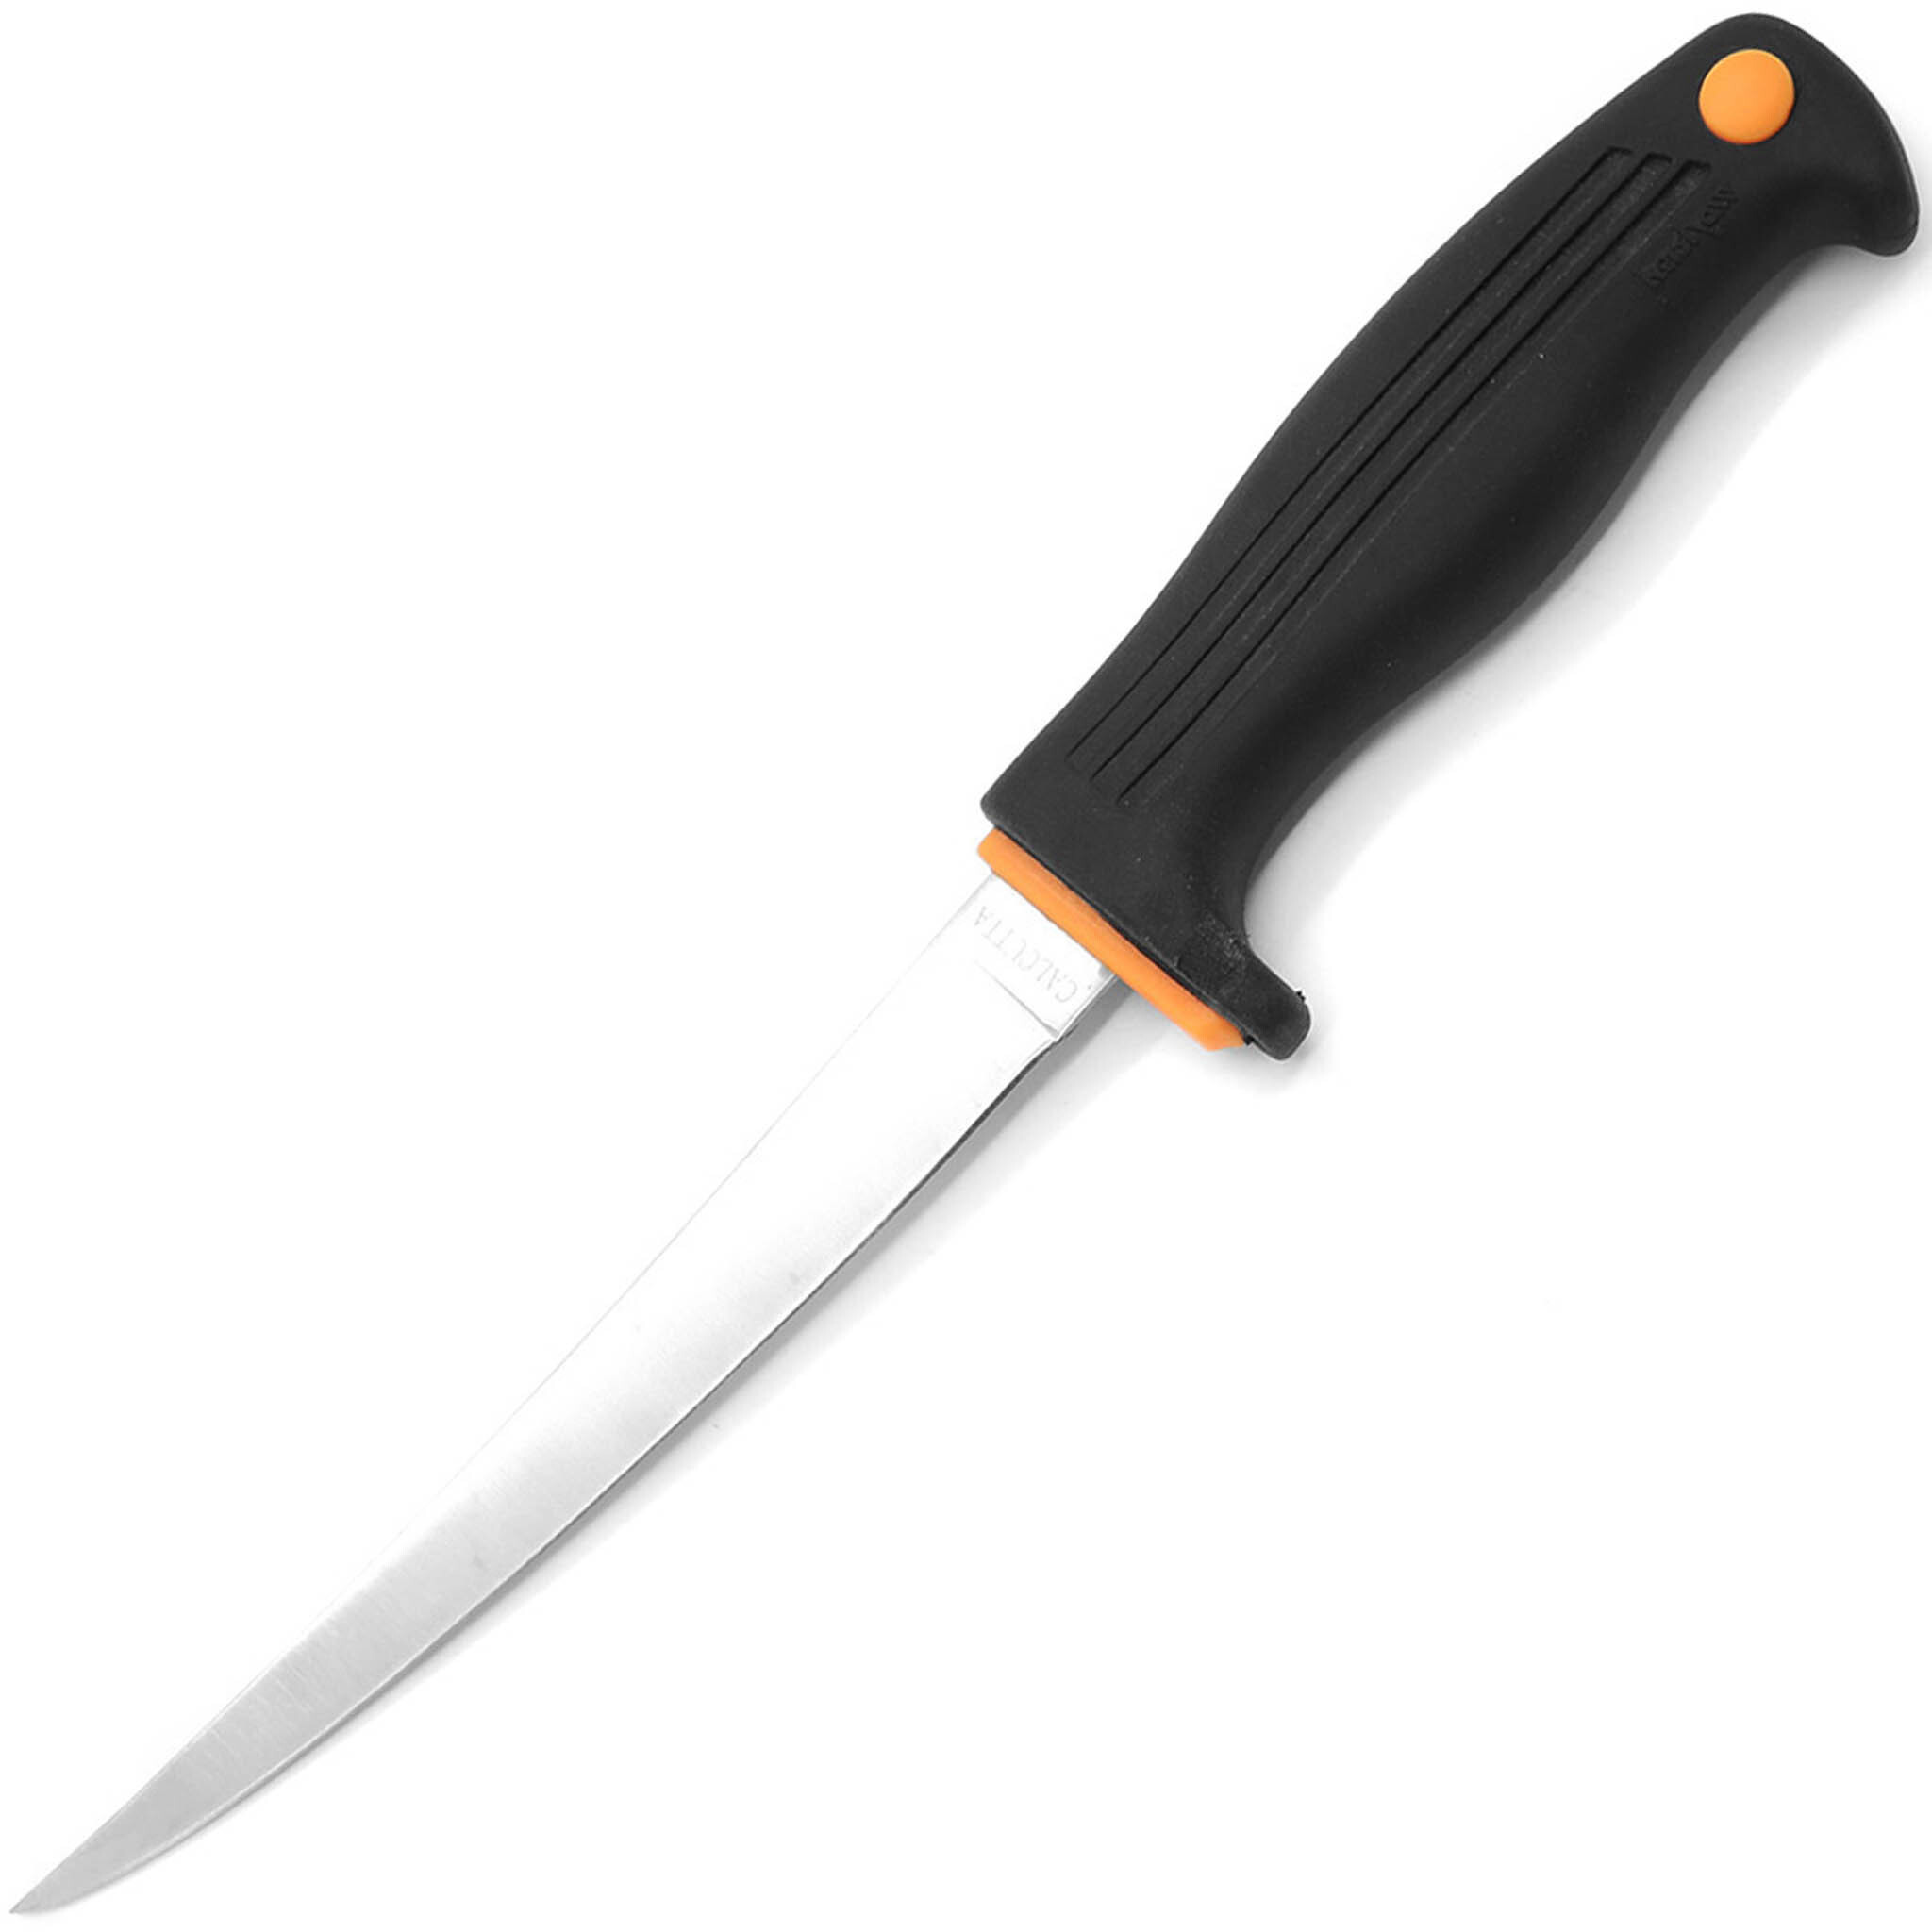 Нож филейный Kershaw Calcutta 6, сталь 420J2, рукоять пластик, черный - фото 1